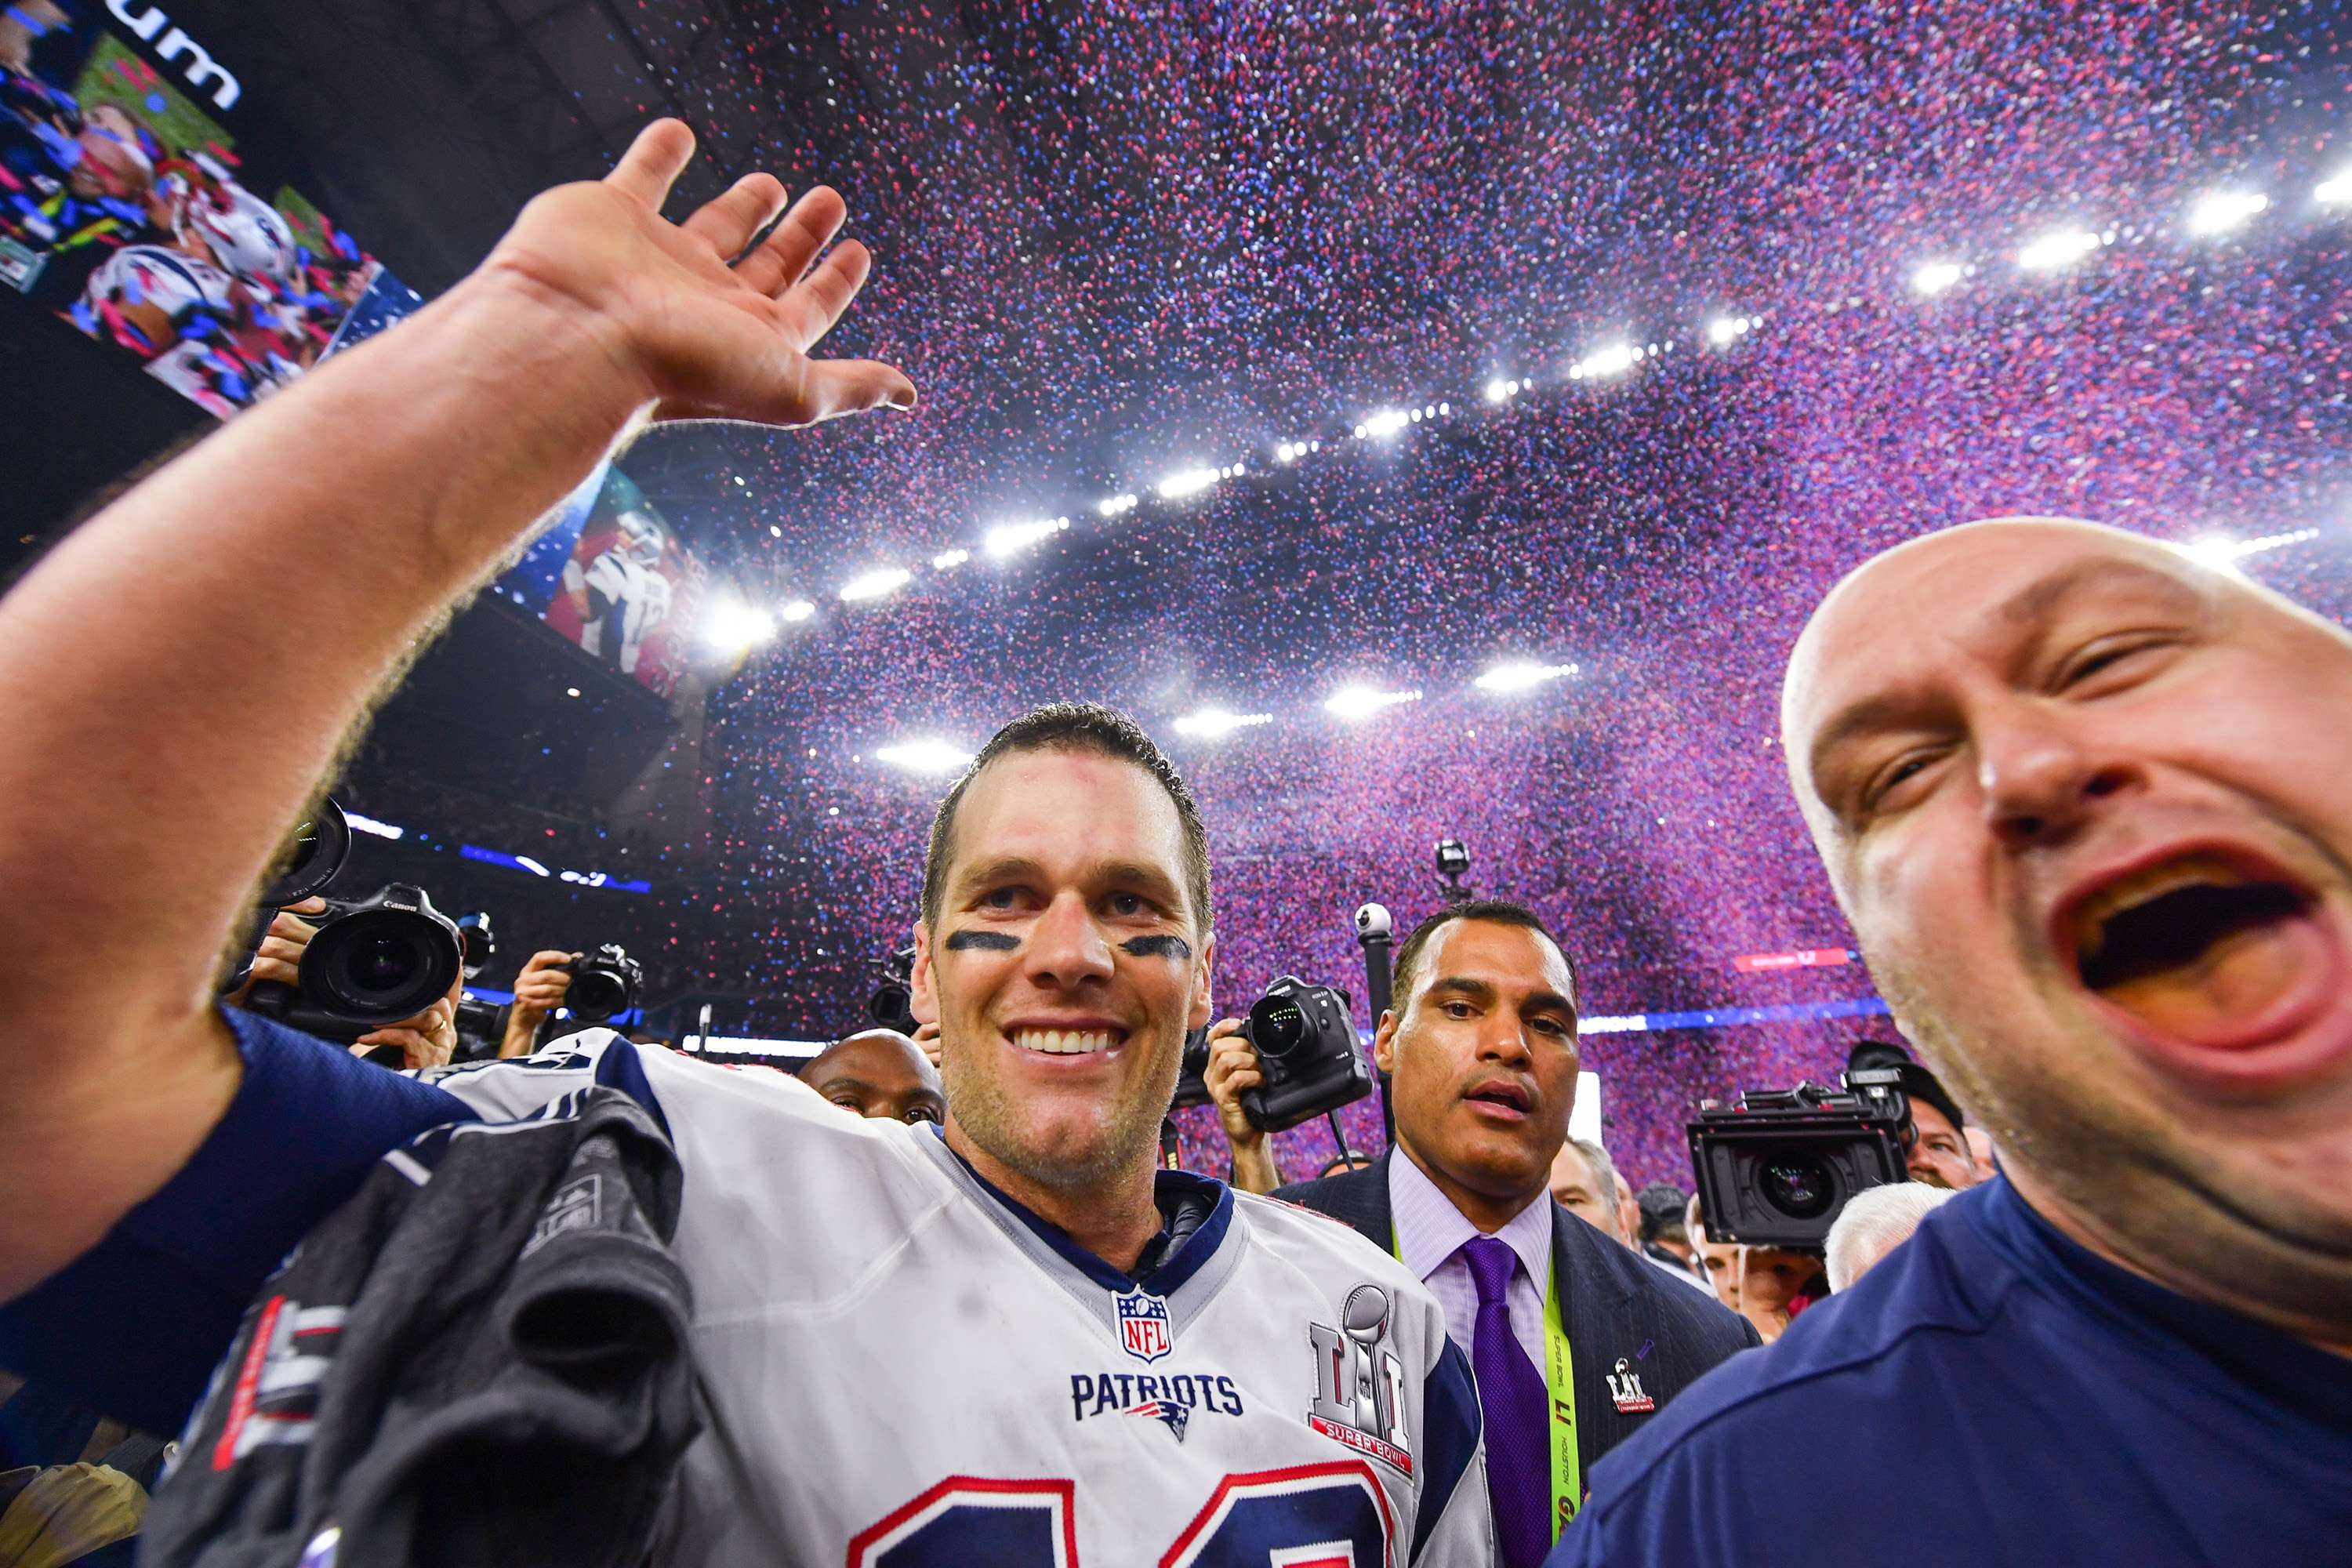 New England Patriots quarterback Tom Brady celebrates during the post-game ceremony for Super Bowl LI. Photo: TNS